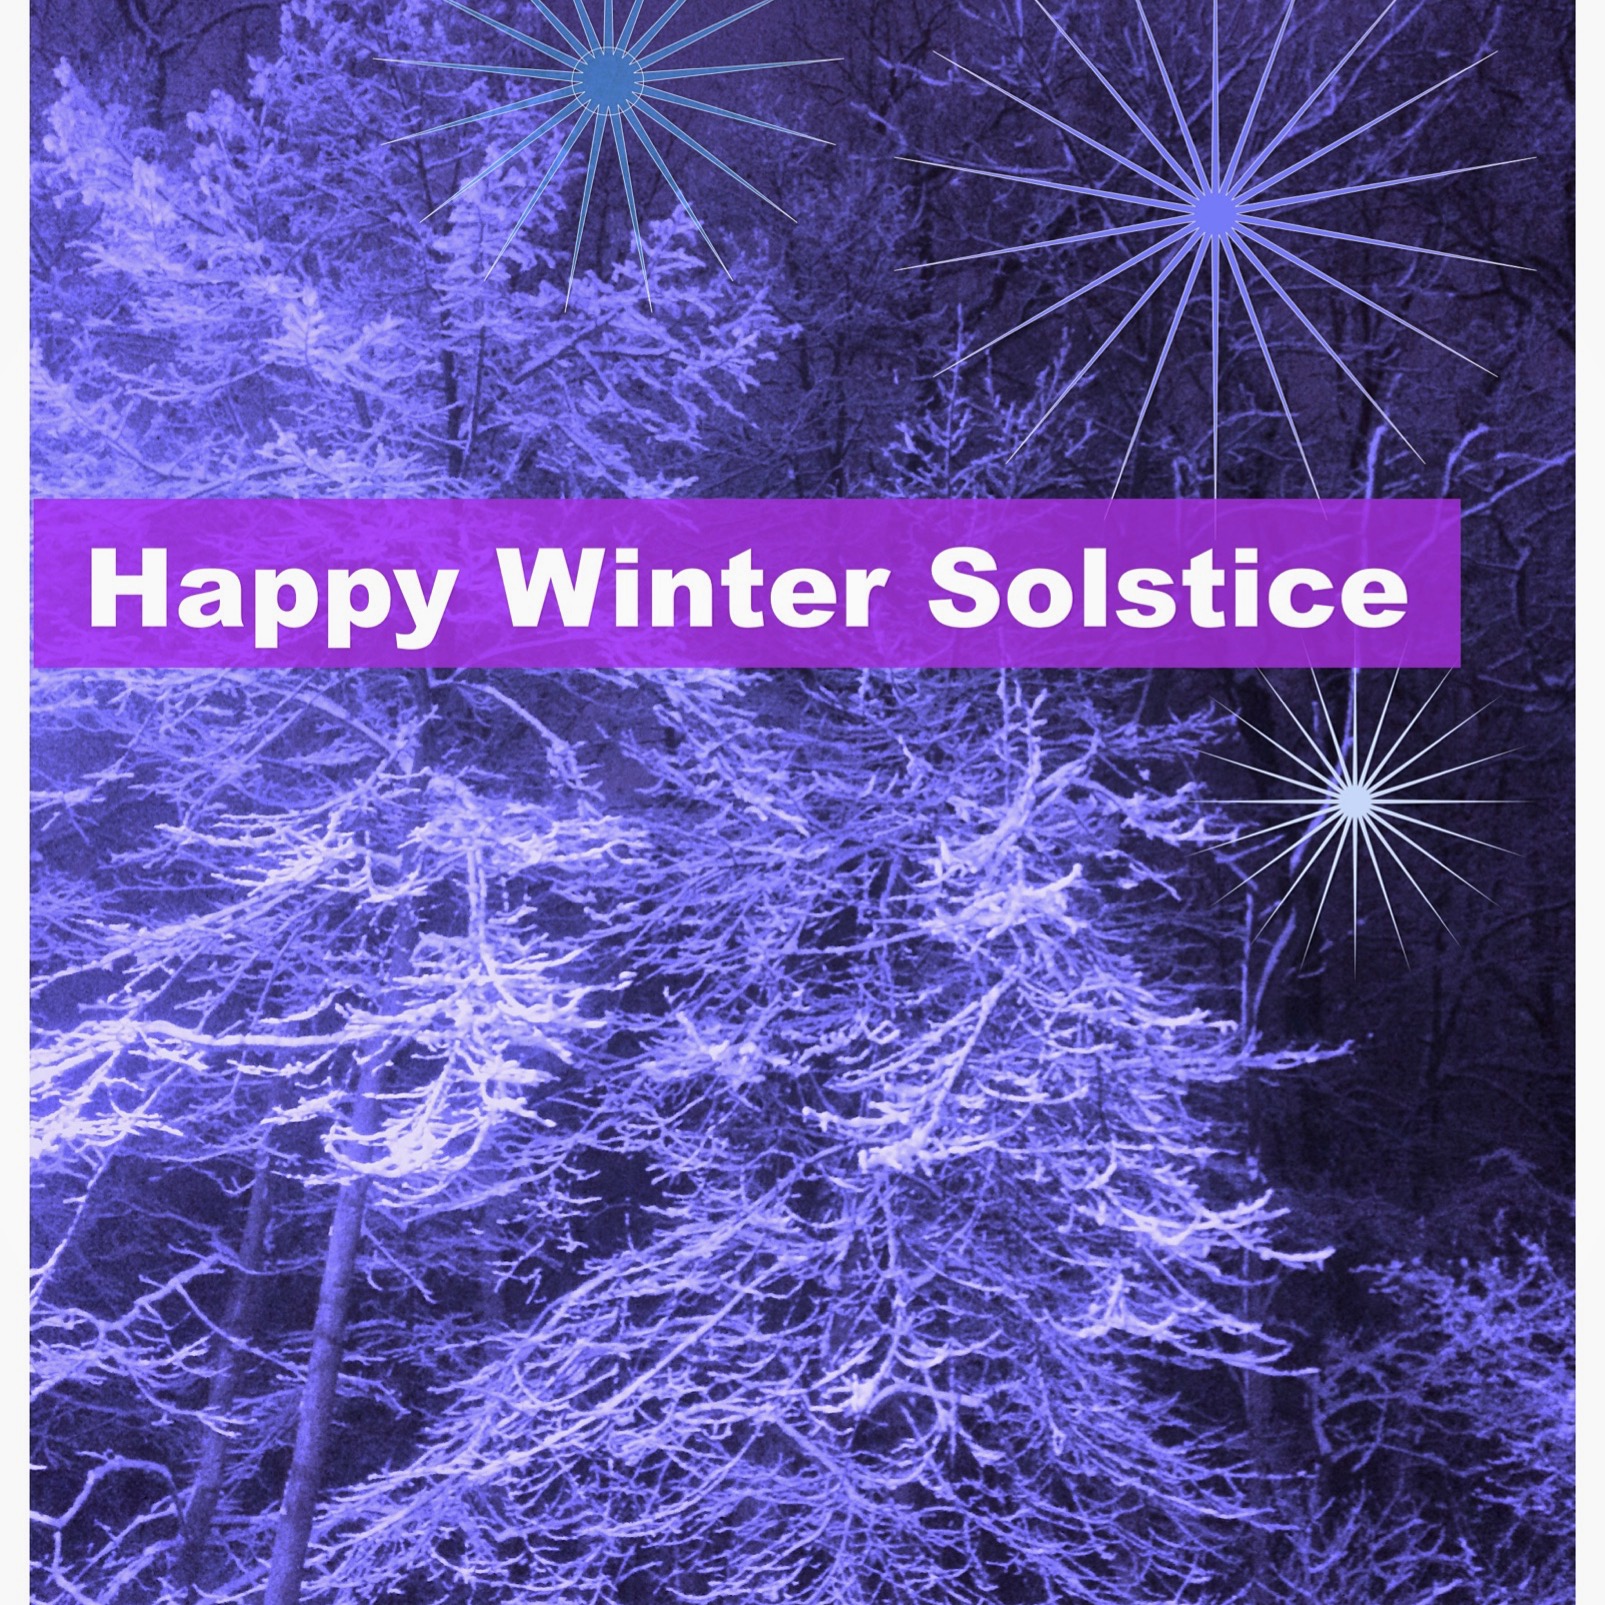 Happy Winter Solstice! 